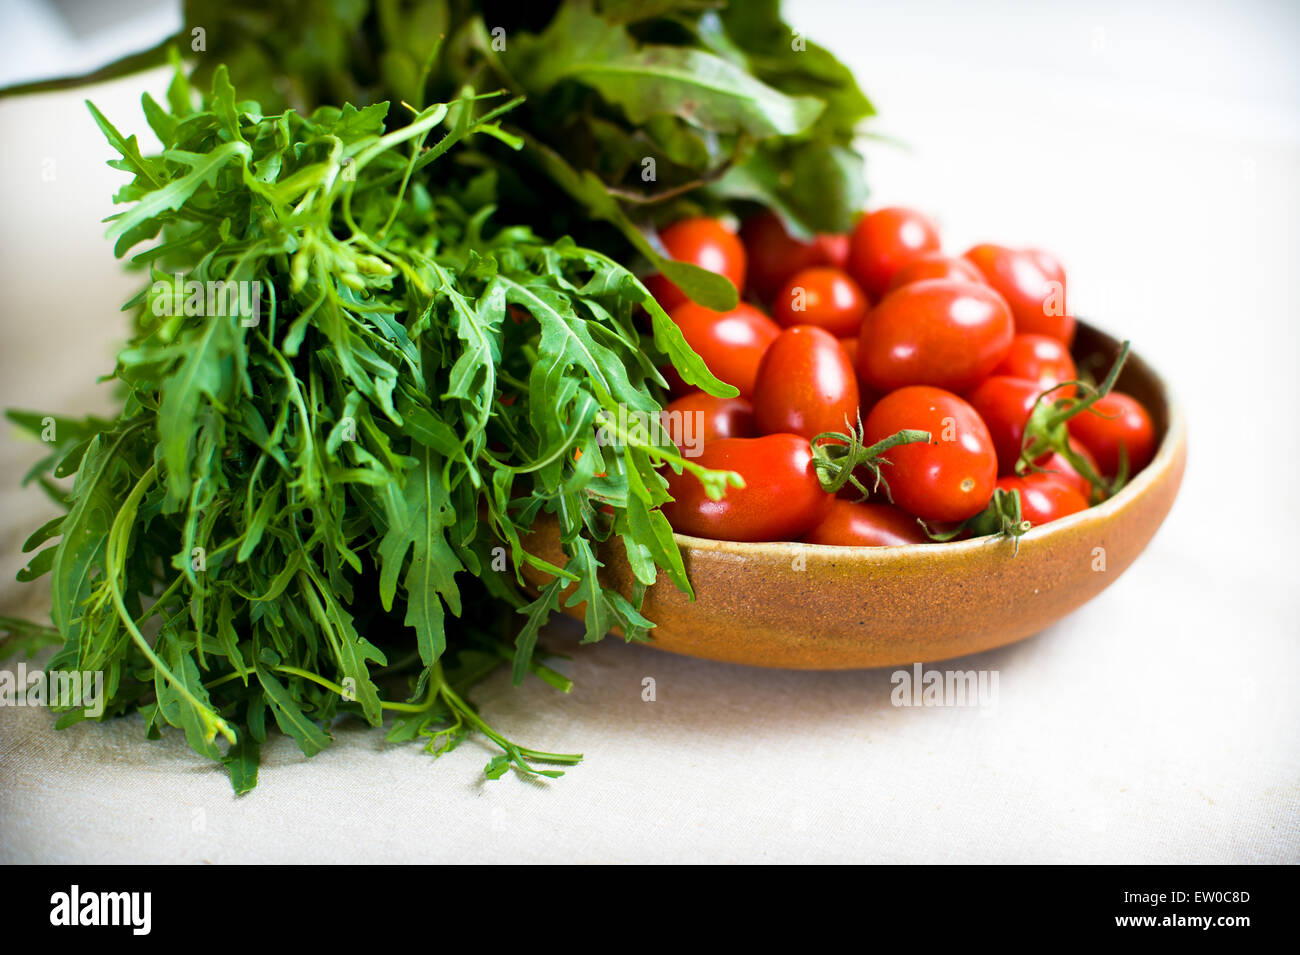 Grüner Salat und rote Tomaten roh auf Platte auf neutralem Hintergrund Stockfoto